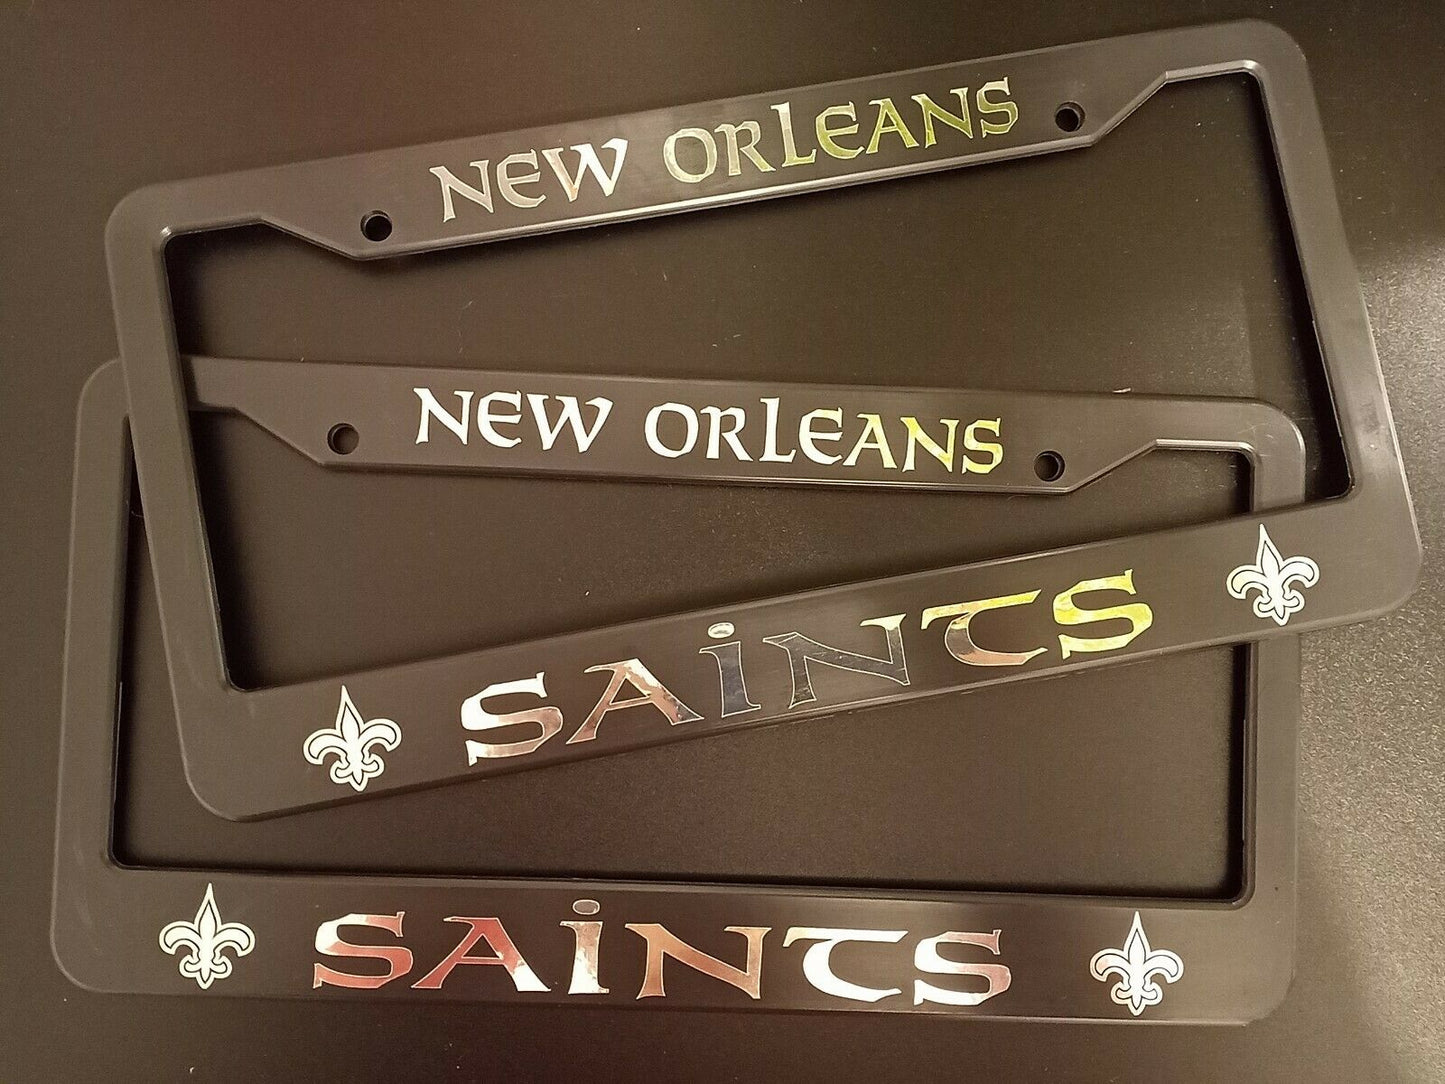 Set of 2 New Orleans Saints Plastic or Aluminum Car License Plate Frames Black Truck Parts Vehicle Accessories Auto Decor